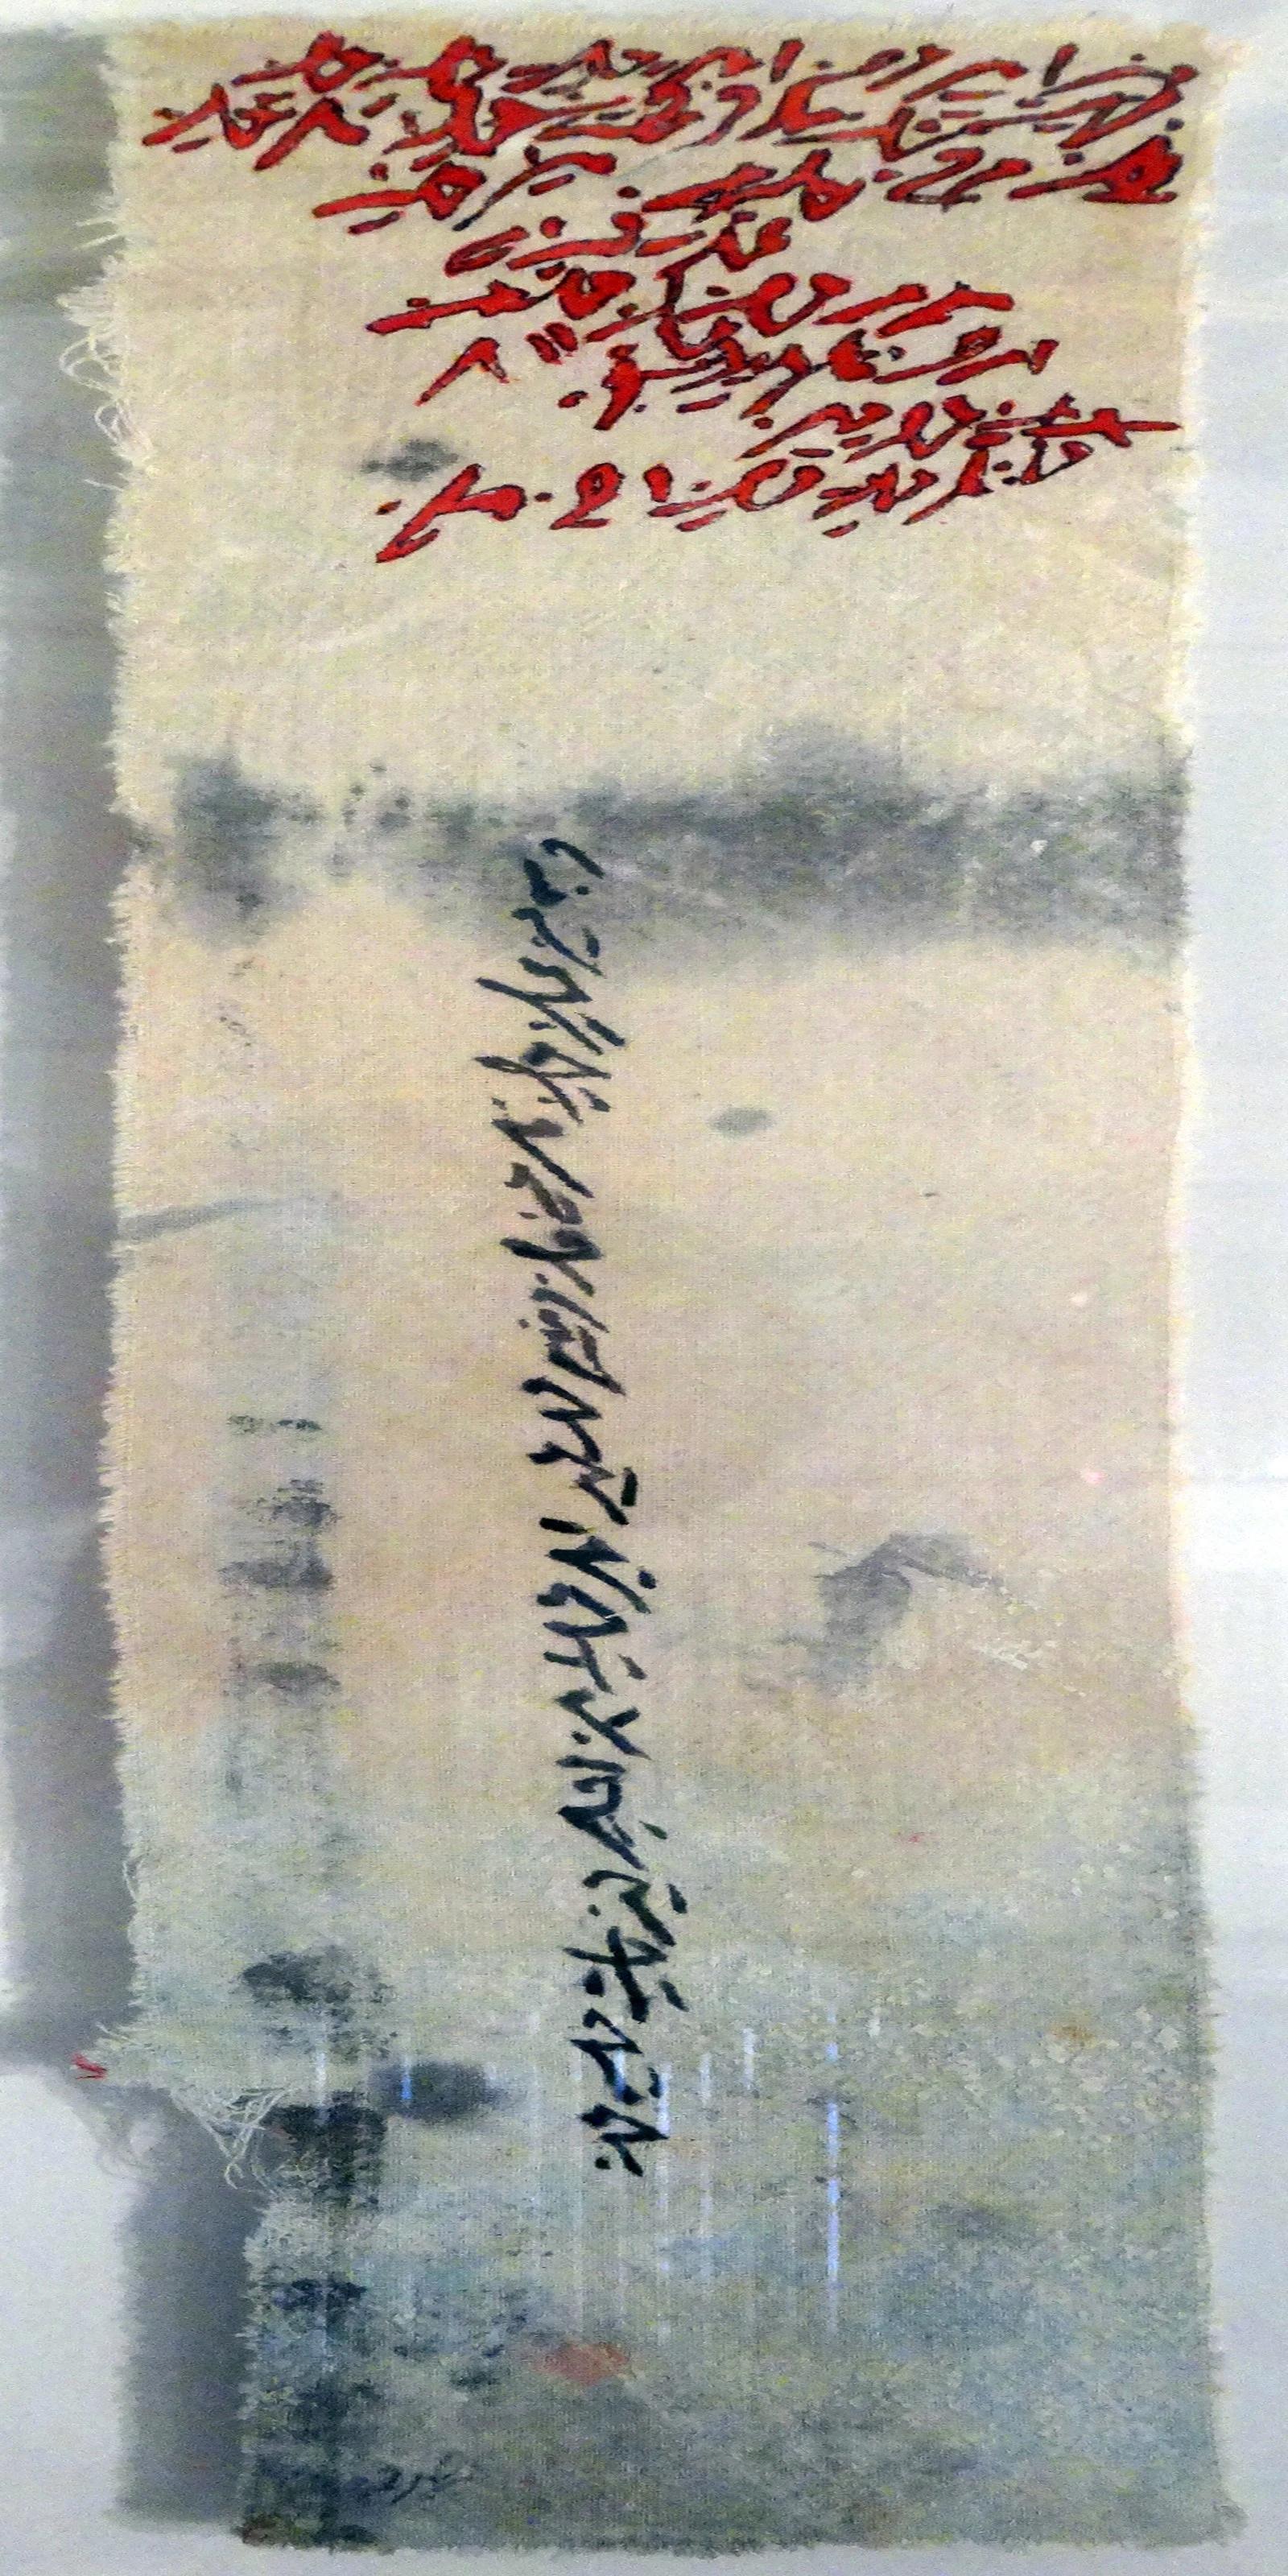 „Abstrakte Schrift“ Tinte auf Stoff Gemälde 20" x 6" Zoll von Mohamed Monaiseer


Mohamed Monaiseer (*1989 in Kairo, Ägypten) verleiht immateriellen Phänomenen mit seinen zeichnerischen und malerischen Arbeiten Körper und Form. Er hat in zahlreichen